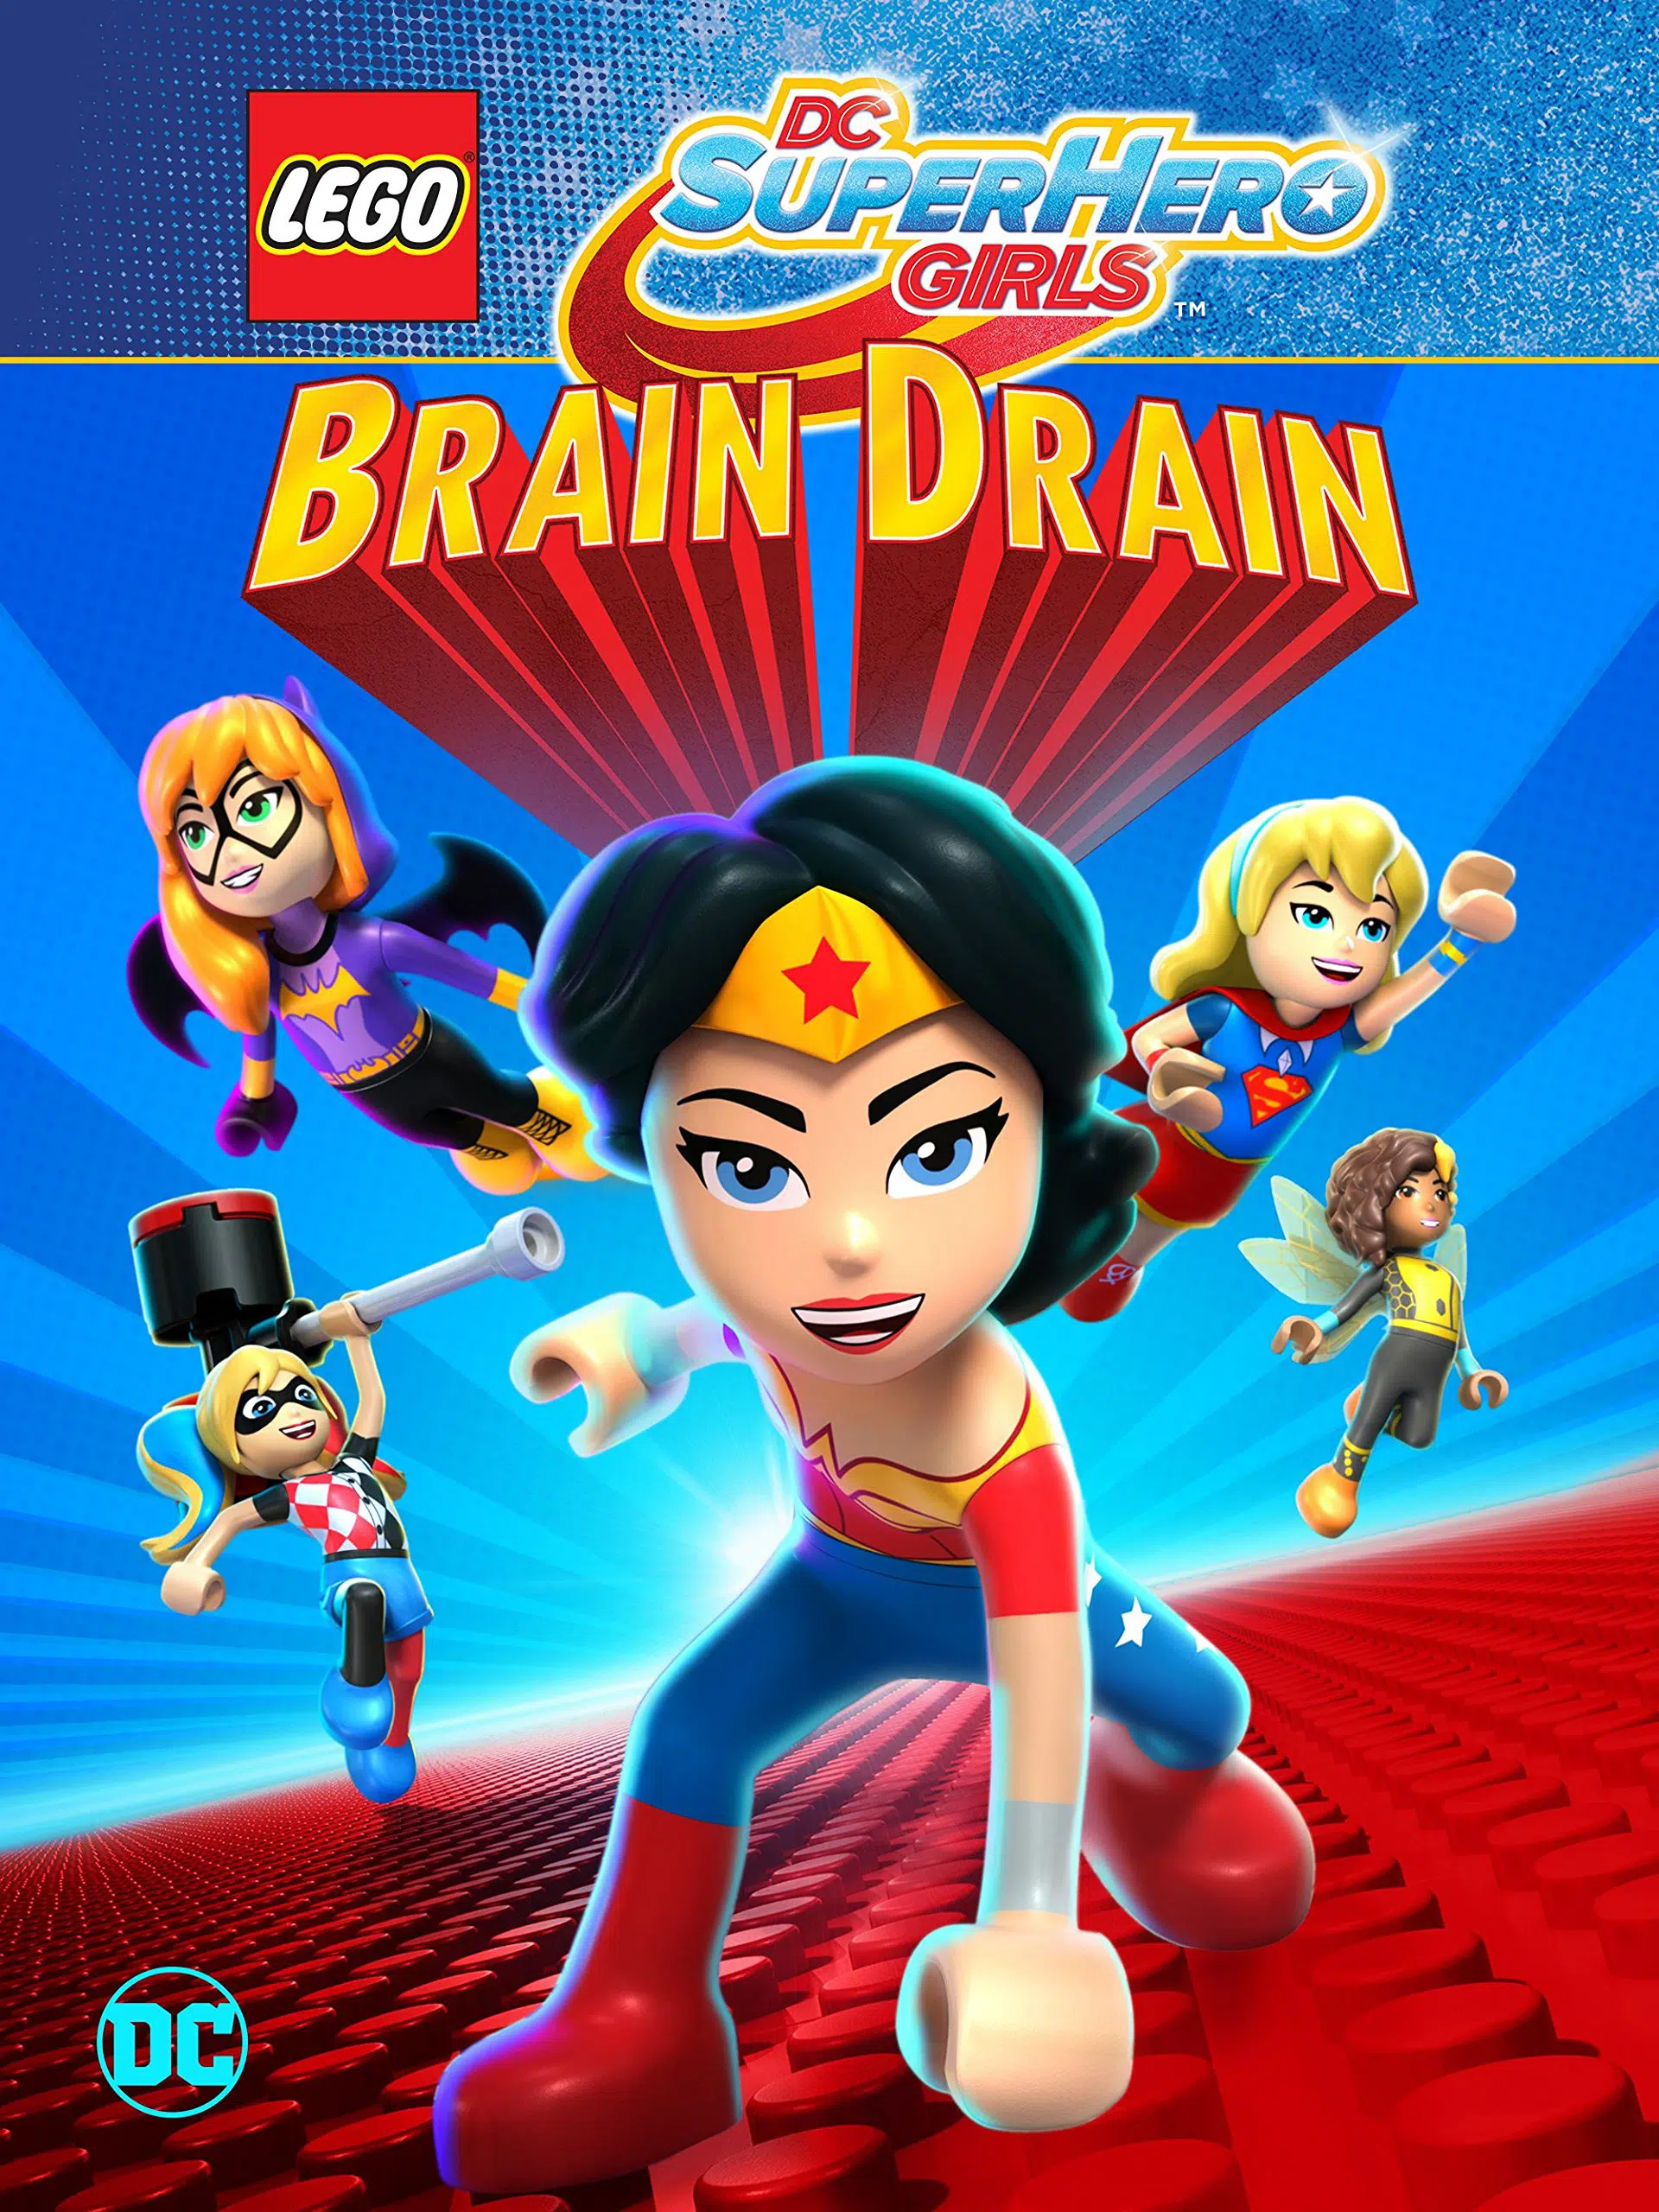 ดูหนังออนไลน์ฟรี LEGO DC SUPER HERO GIRLS BRAIN DRAIN เลโก้ แก๊งค์สาว ดีซีซูเปอร์ฮีโร่ ทลายแผนล้างสมองครองโลก